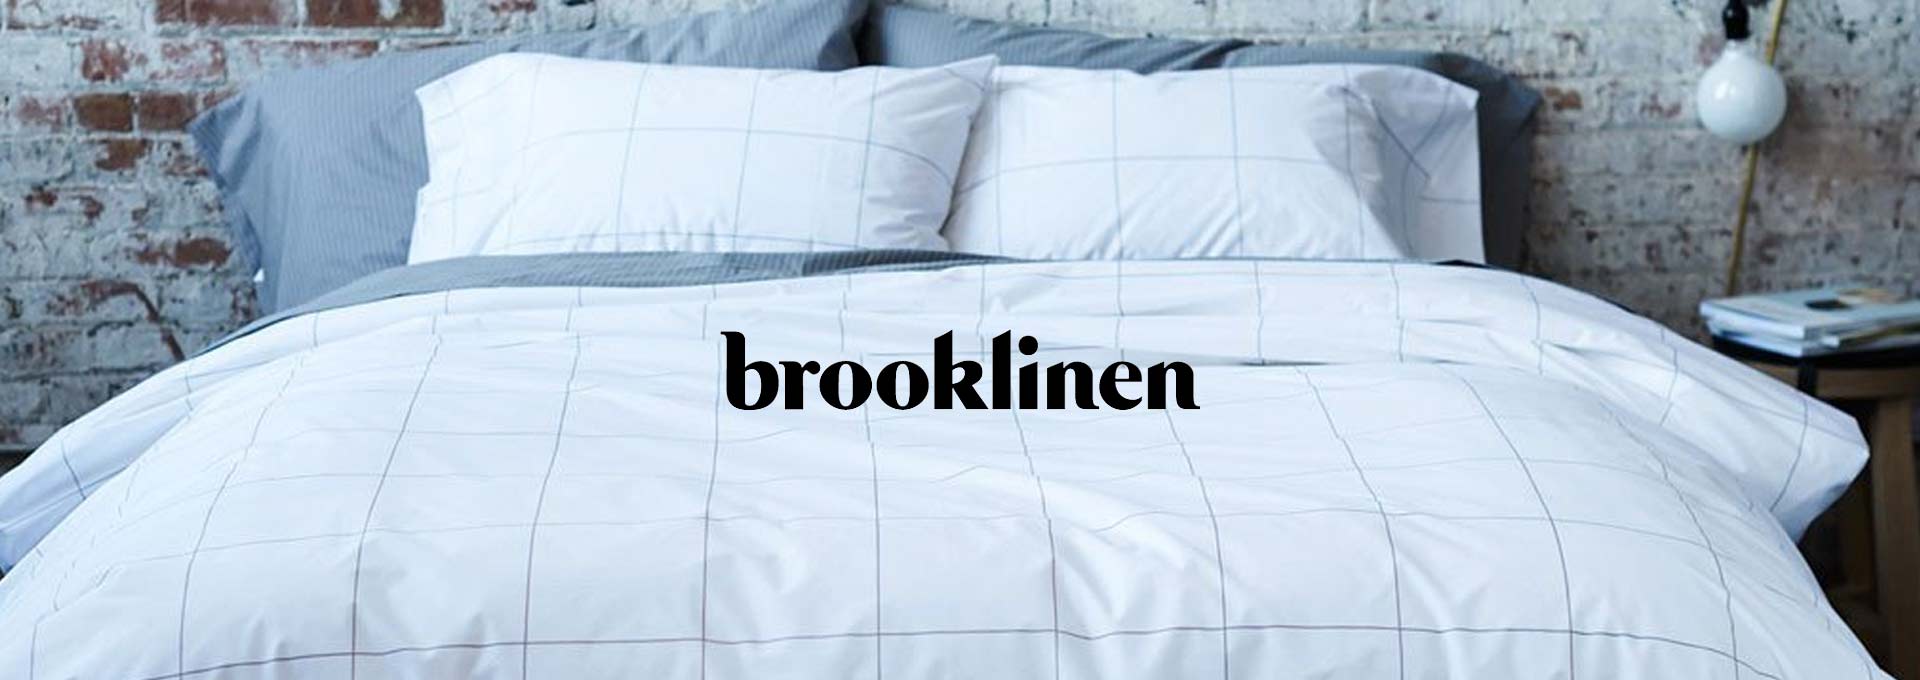 brooklinen mattress topper review